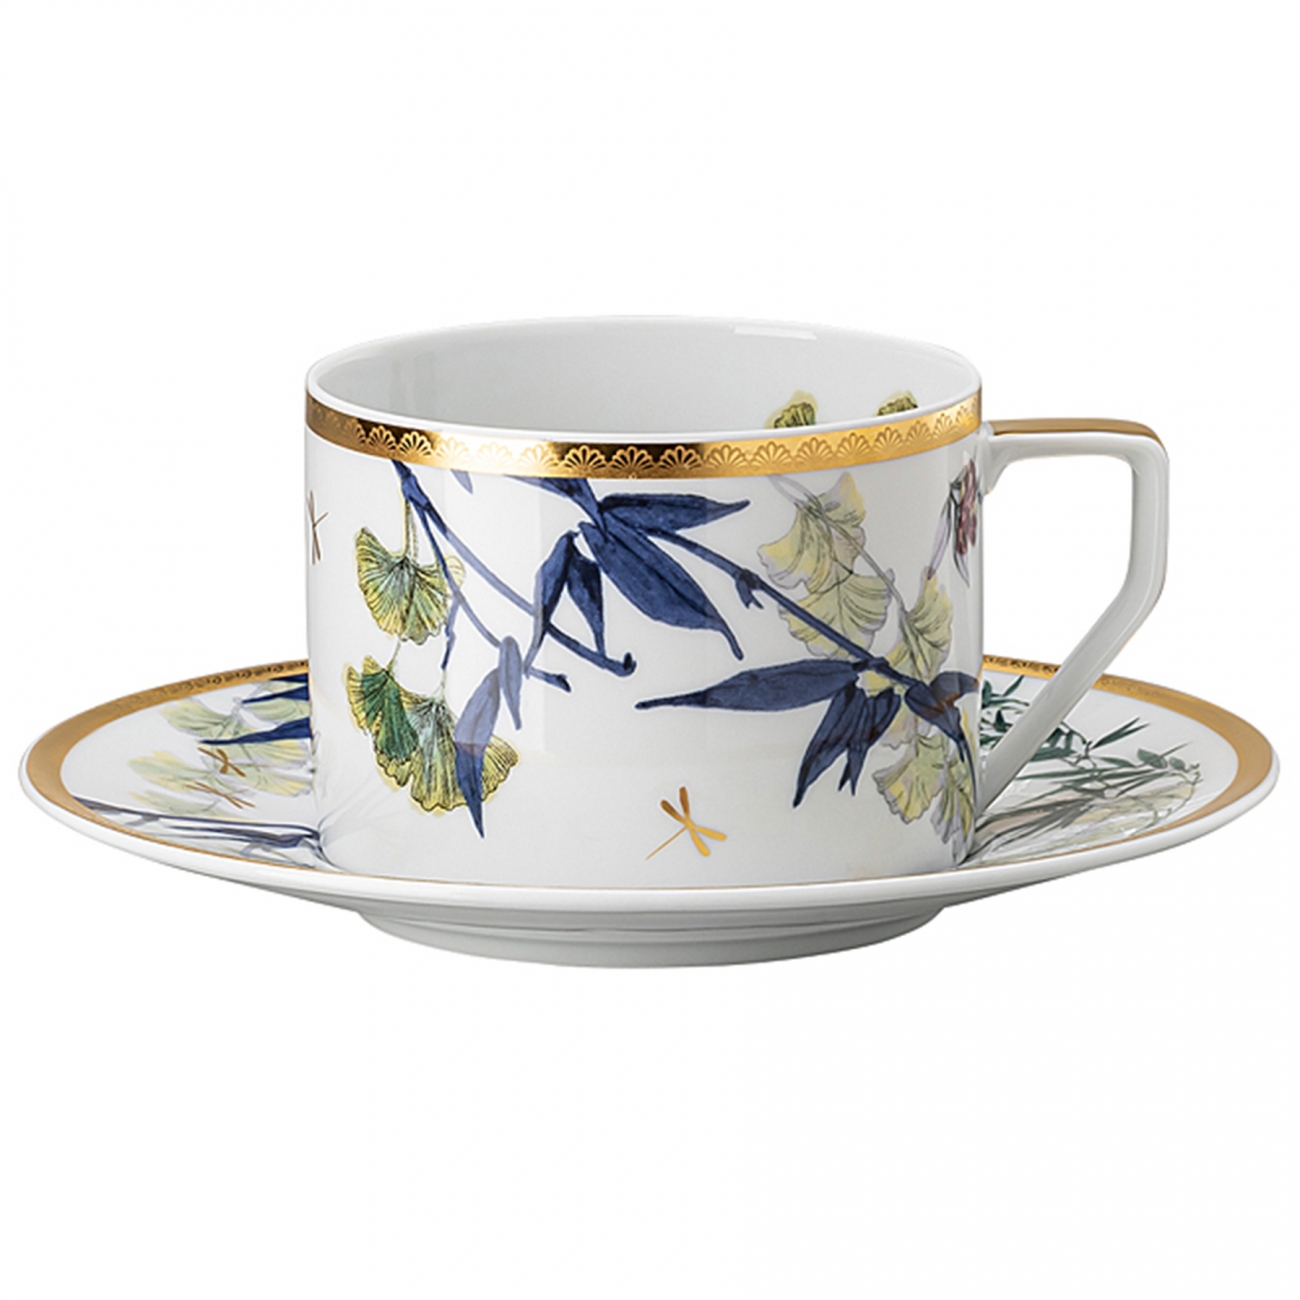 Rosenthal Heritage Turandot Tea Cup